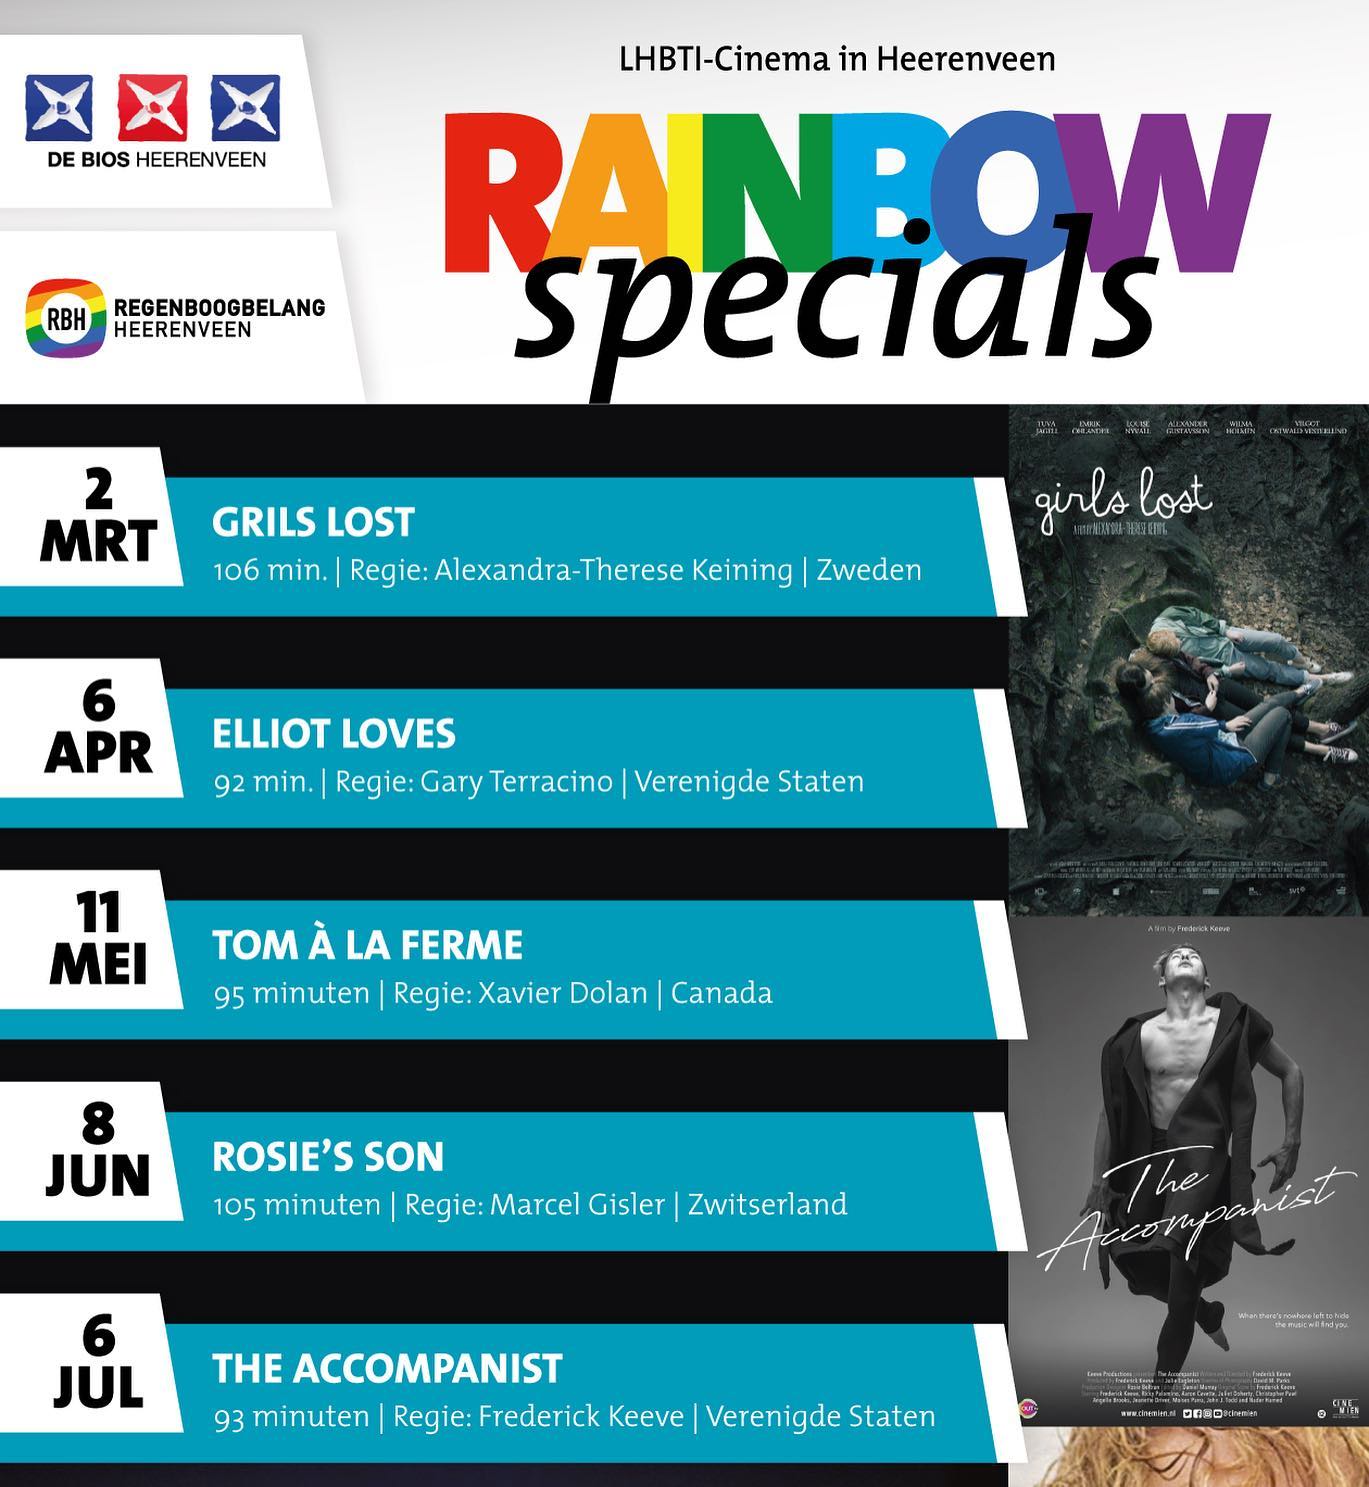 Vorige maand is RBH weer gestart met de Rainbow Specials filmavonden in @de.biosheerenveen . Woensdag 6 april staat de film Elliot Loves op het programma. Nieuwsgierig geworden en kaarten reserveren? Ga dan naar www.rbh.frl/film.

#lhbti #cinema #rbh #debios #heerenveen #film #filmavond #arthouse #regenboogbelangheerenveen #rainbowspecials #friesland